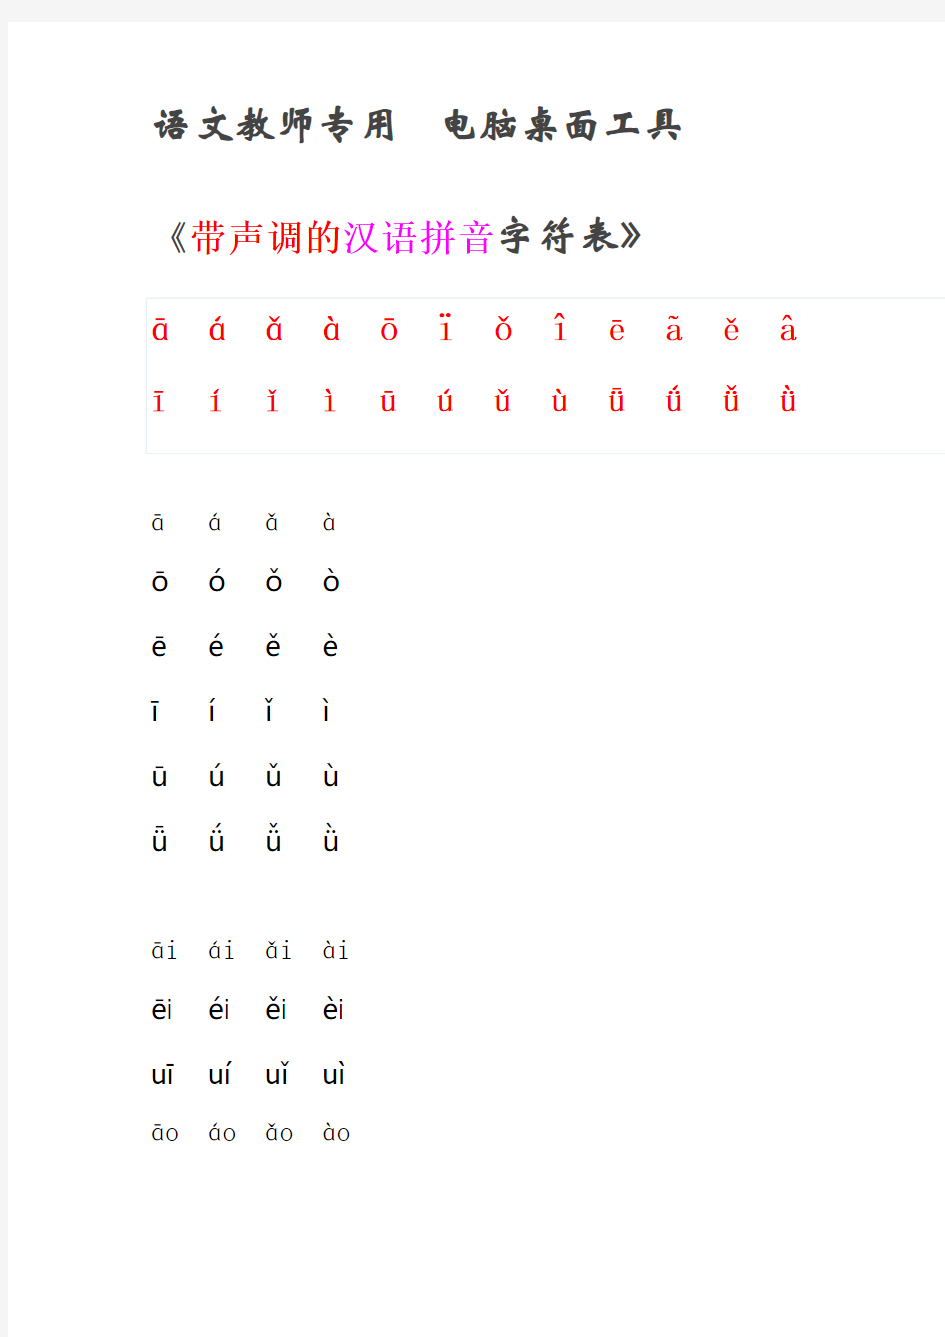 带声调的汉语拼音字符表 (1)